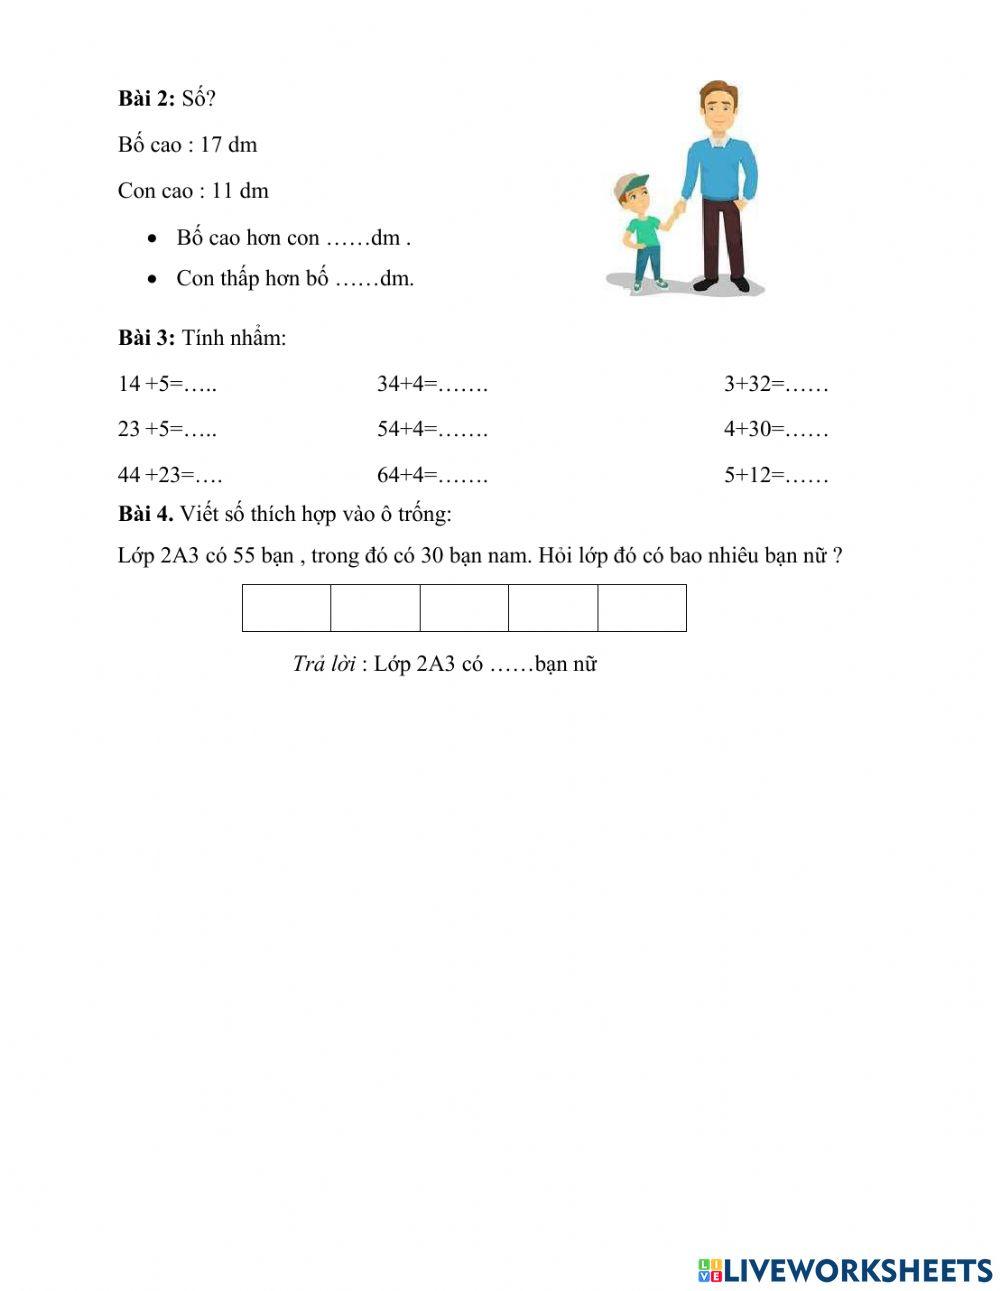 Bài tập ôn tập toán cuối tuần 4 - lớp 2